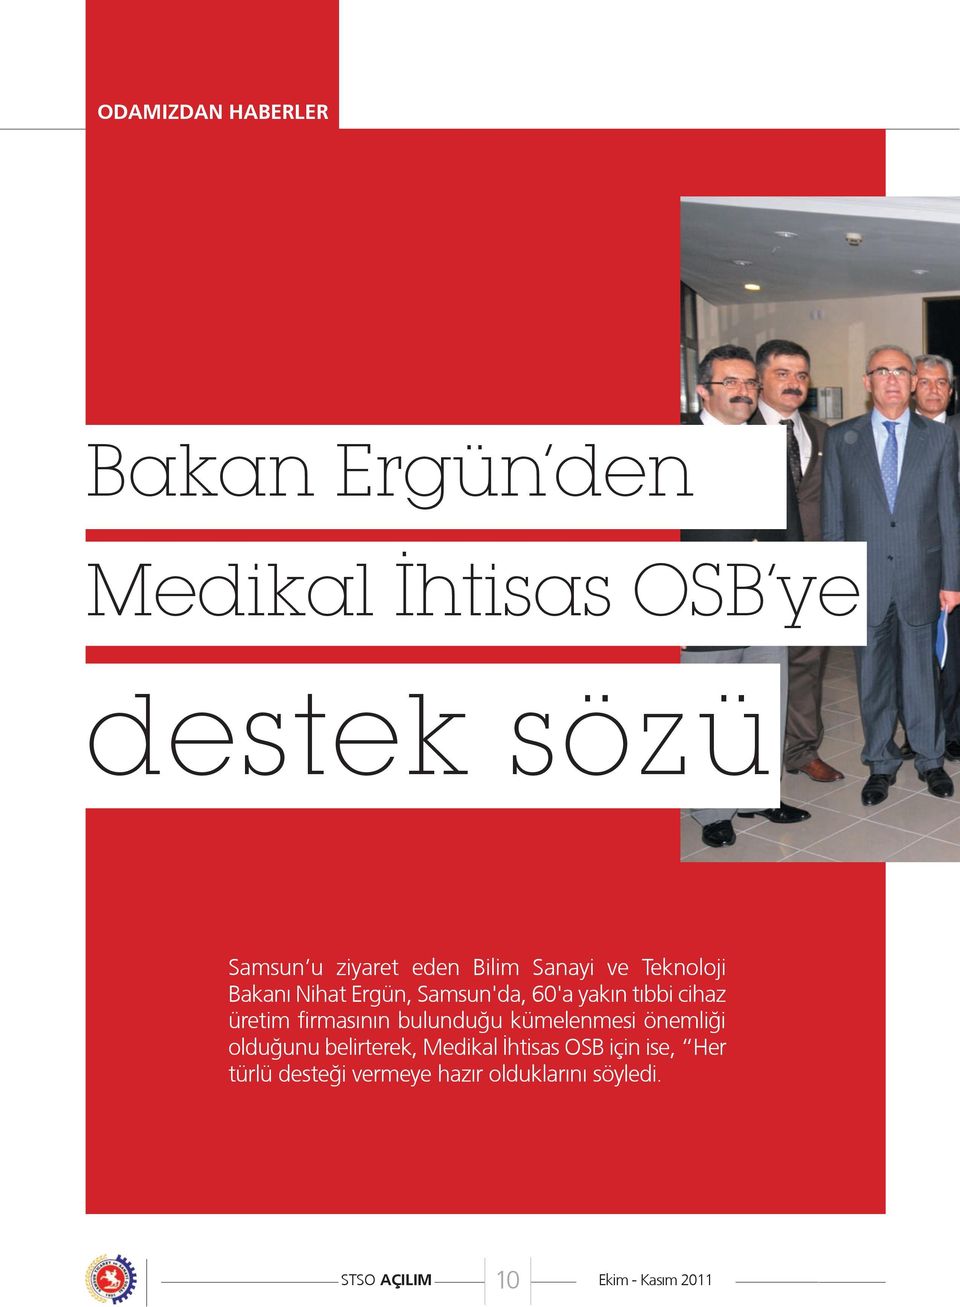 üretim firmasının bulunduğu kümelenmesi önemliği olduğunu belirterek, Medikal İhtisas OSB